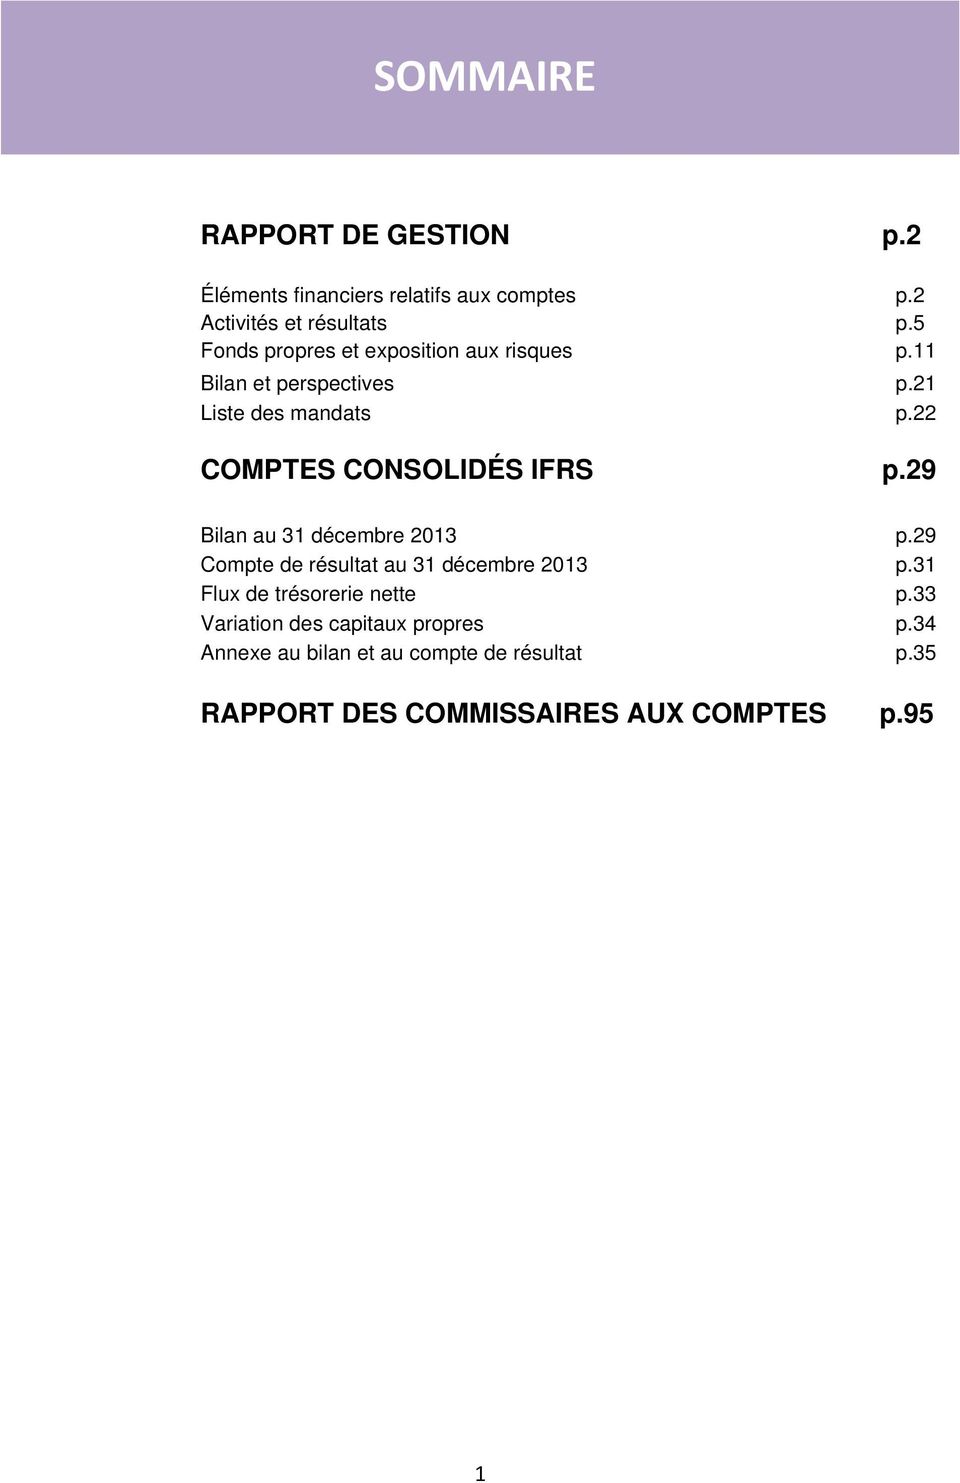 22 COMPTES CONSOLIDÉS IFRS p.29 Bilan au 31 décembre 2013 p.29 Compte de résultat au 31 décembre 2013 p.